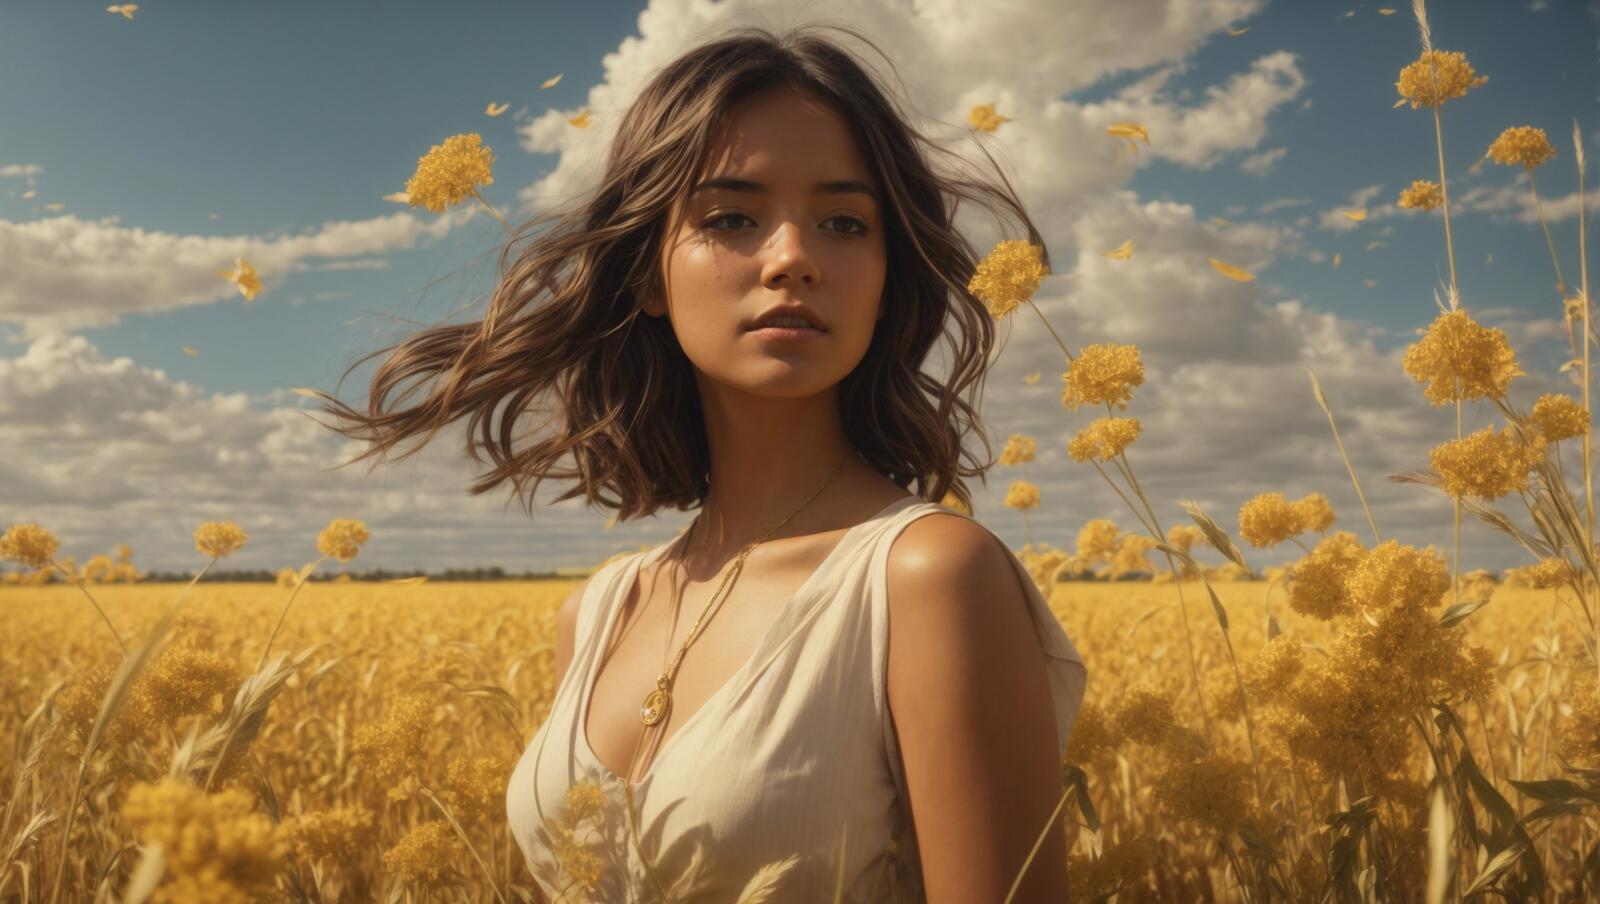 Бесплатное фото Женщина стоит в пшеничном поле и позирует перед камерой